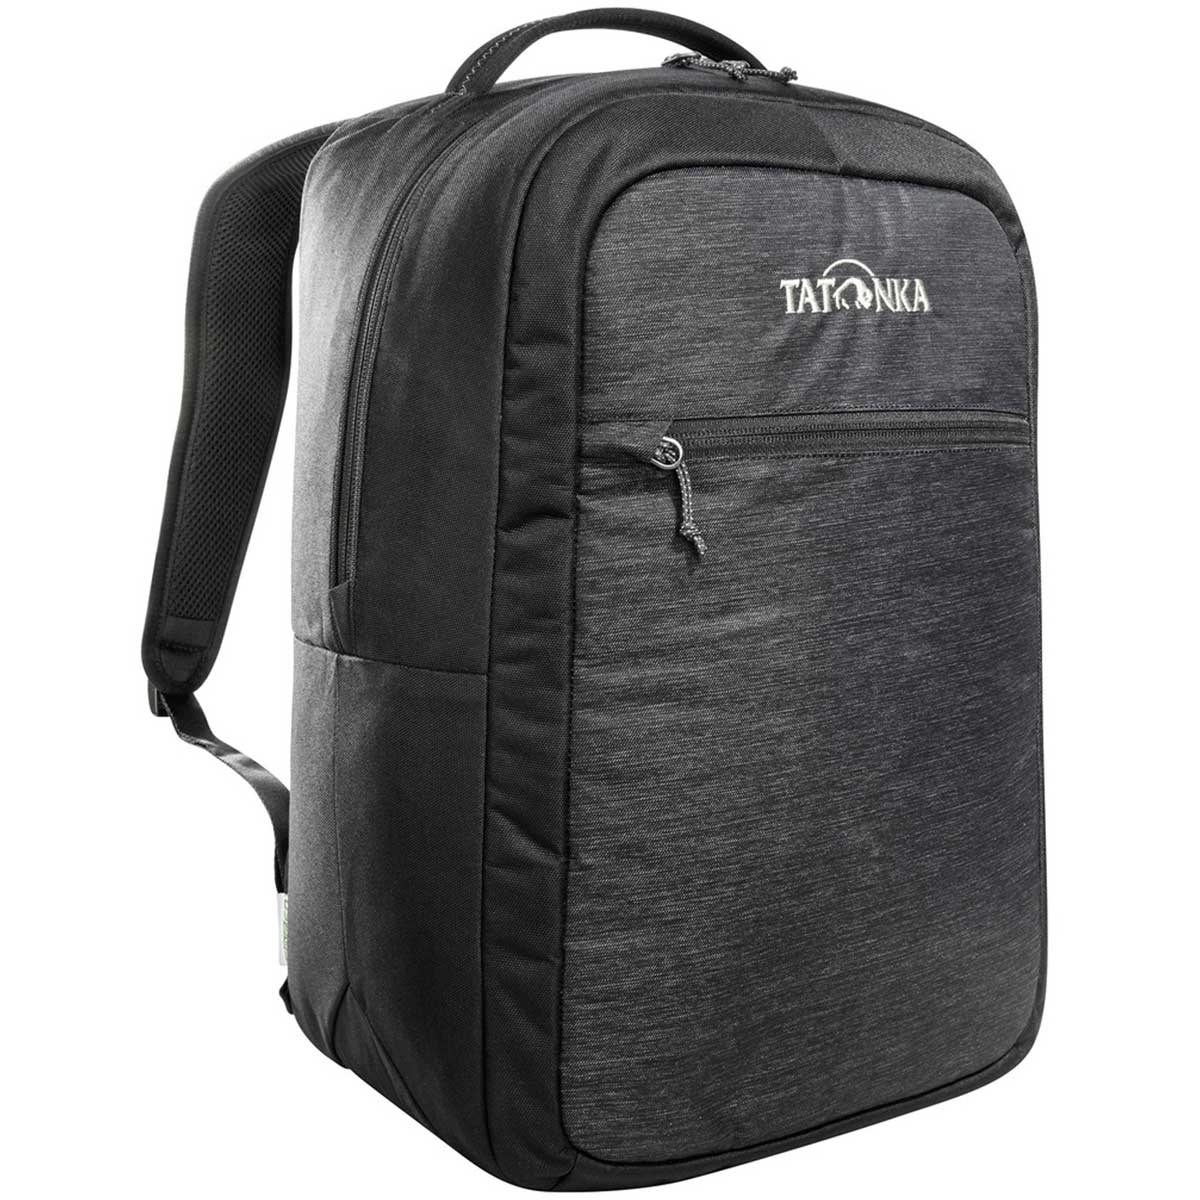 Терморюкзак Tatonka Cooler Backpack 22 л - Black